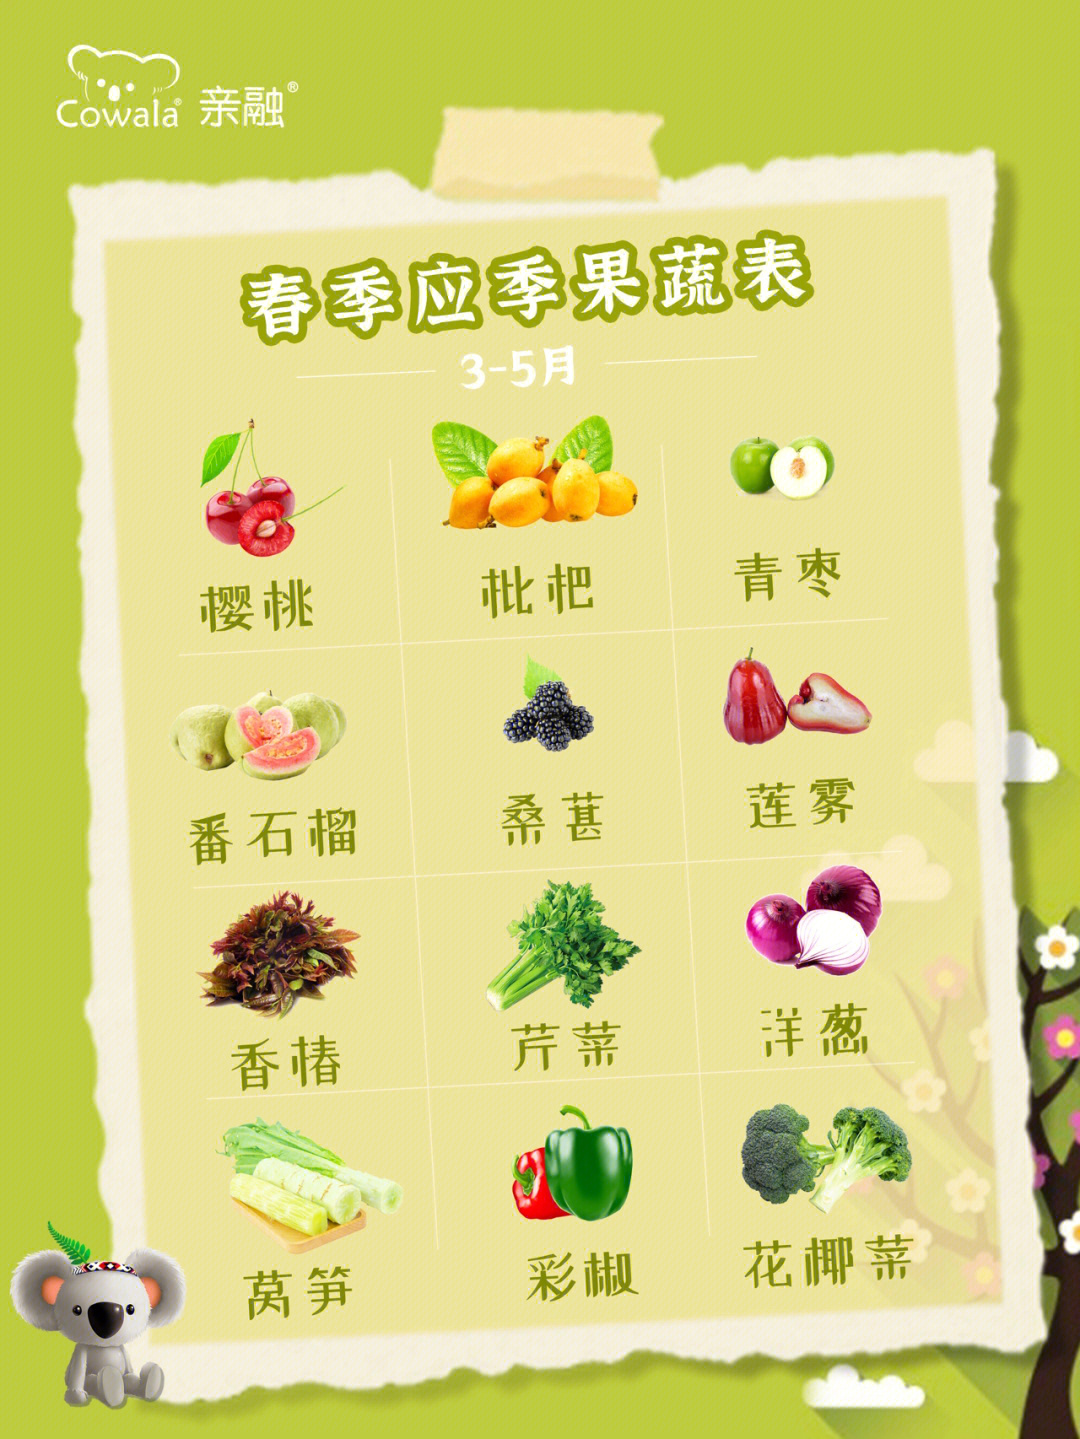 四季蔬菜时令表图片